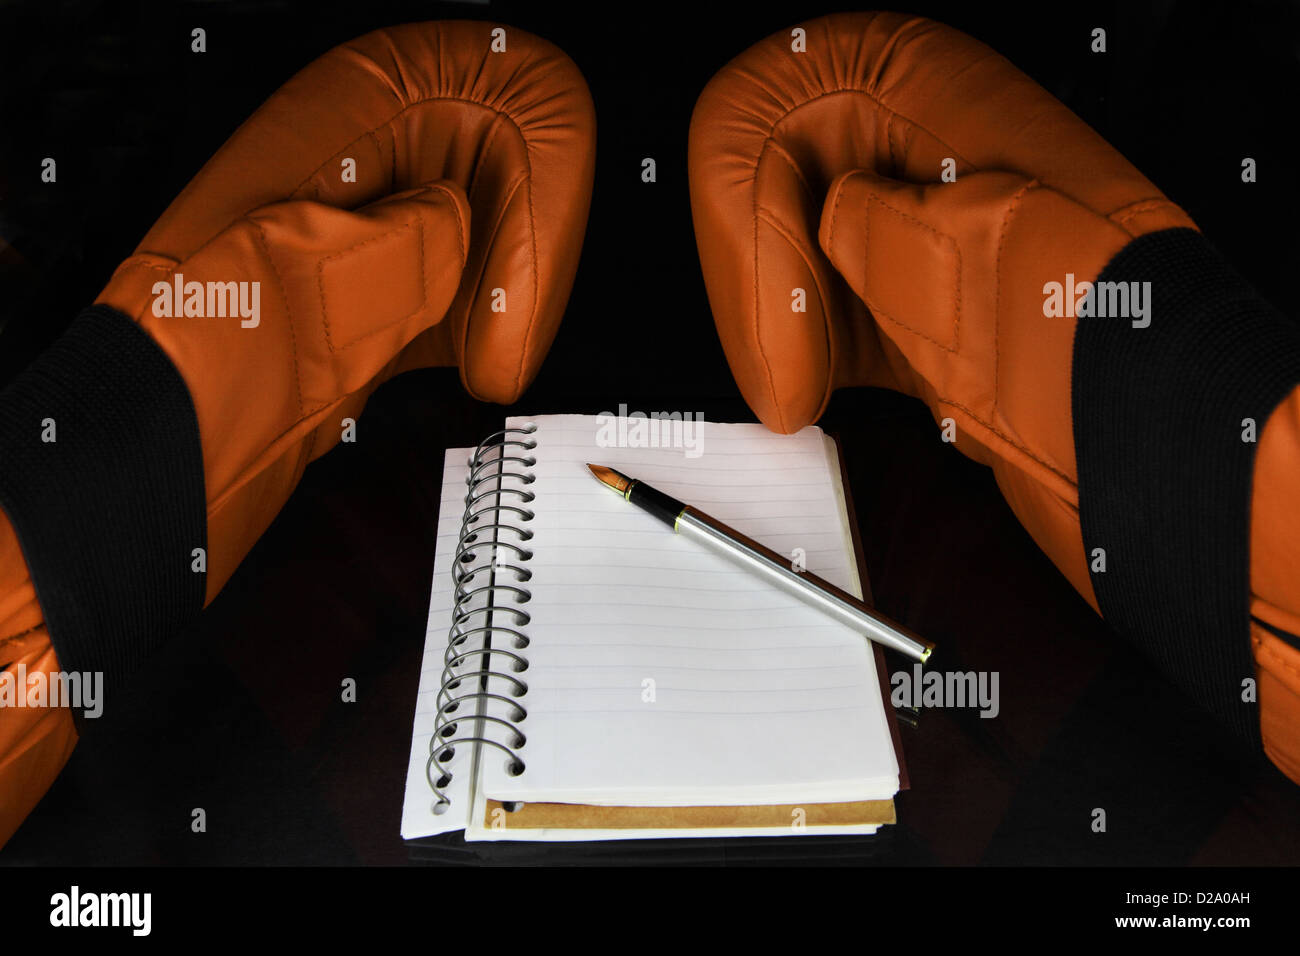 Un paio di guanti da pugilato, un notebook e una penna su una superficie scura. Foto Stock